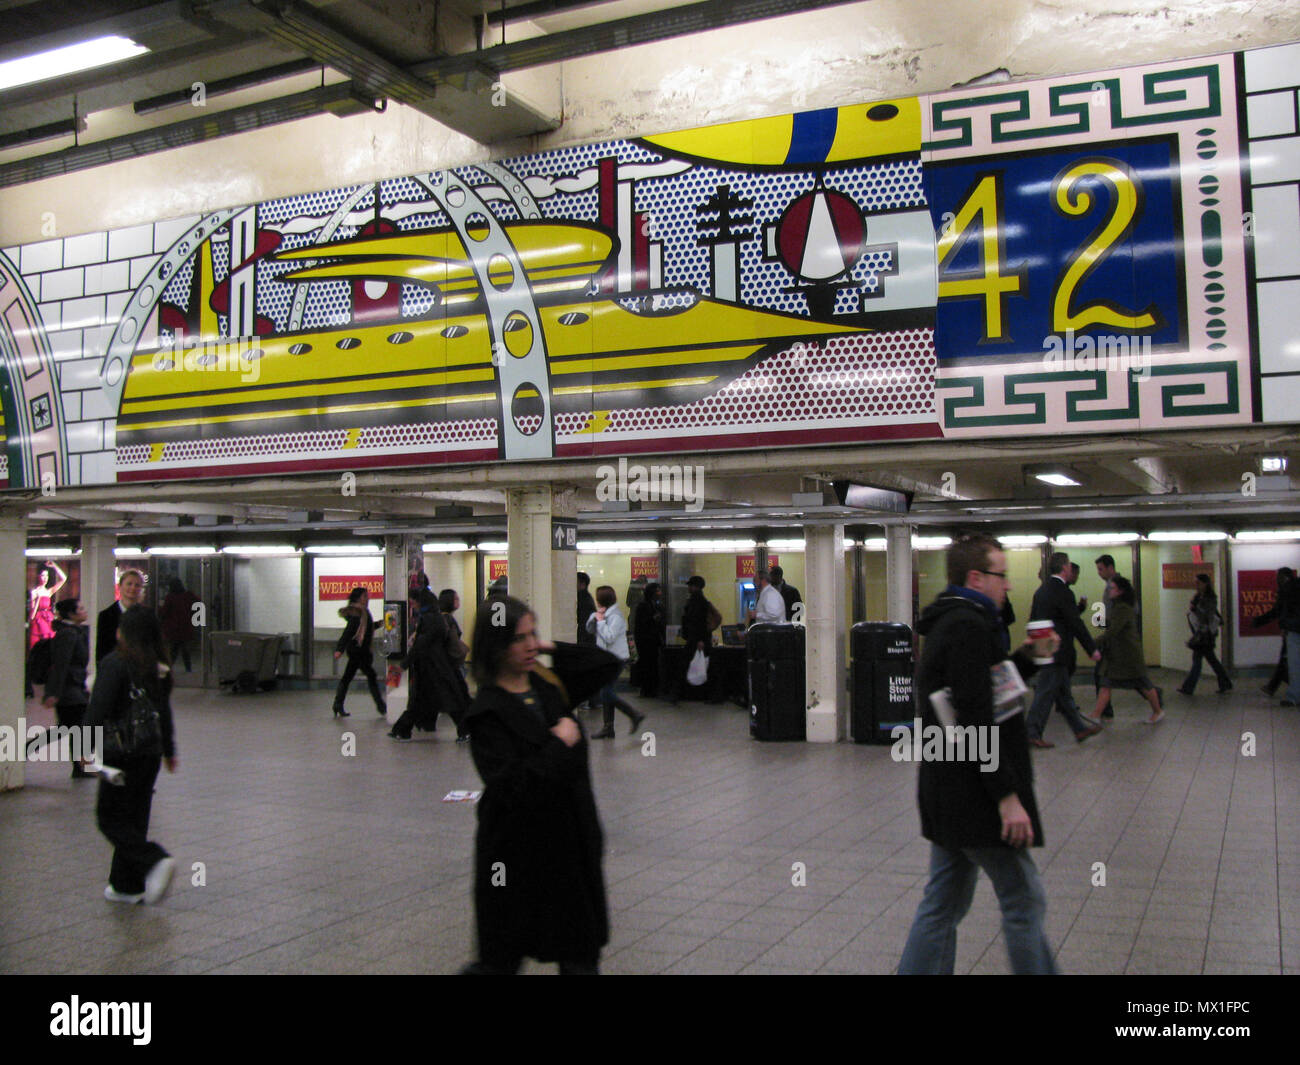 . Times Square Mural . Parte di uno splendido murale di Roy Lichtenstein in Times Square stazione della metropolitana. 11 novembre 2011, 10:43. Eden, Janine e Jim da New York City caricato da vcohen 371 Lichtenstein sotto Times Square vc Foto Stock